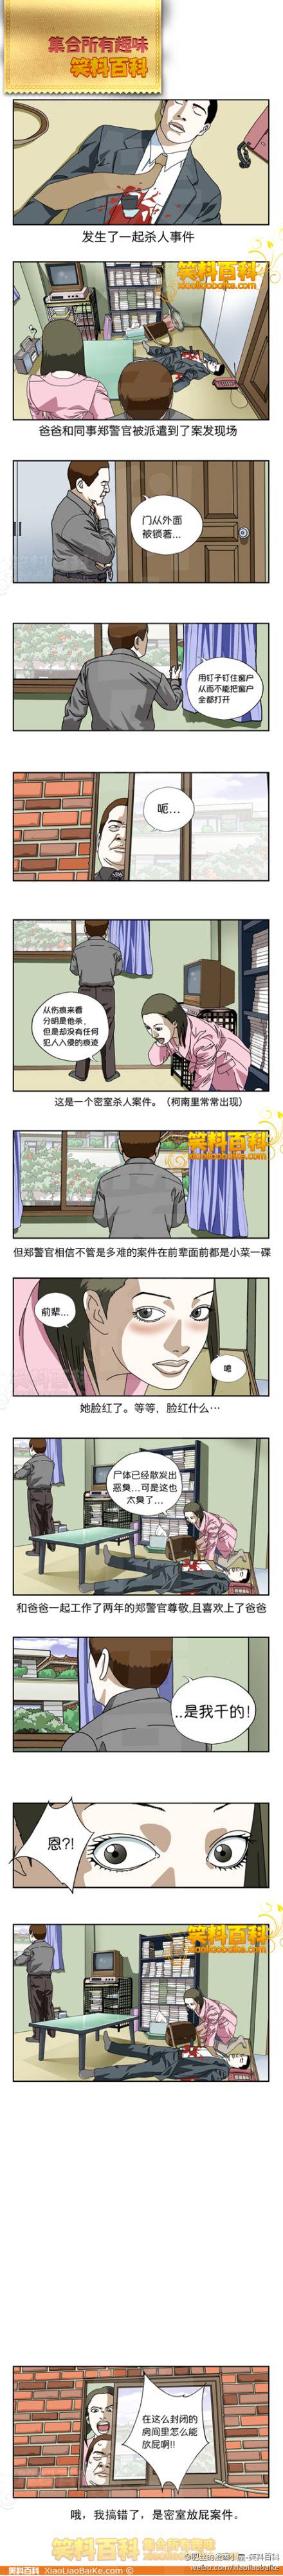 邪恶漫画爆笑囧图第72刊：灯神，你肿么了